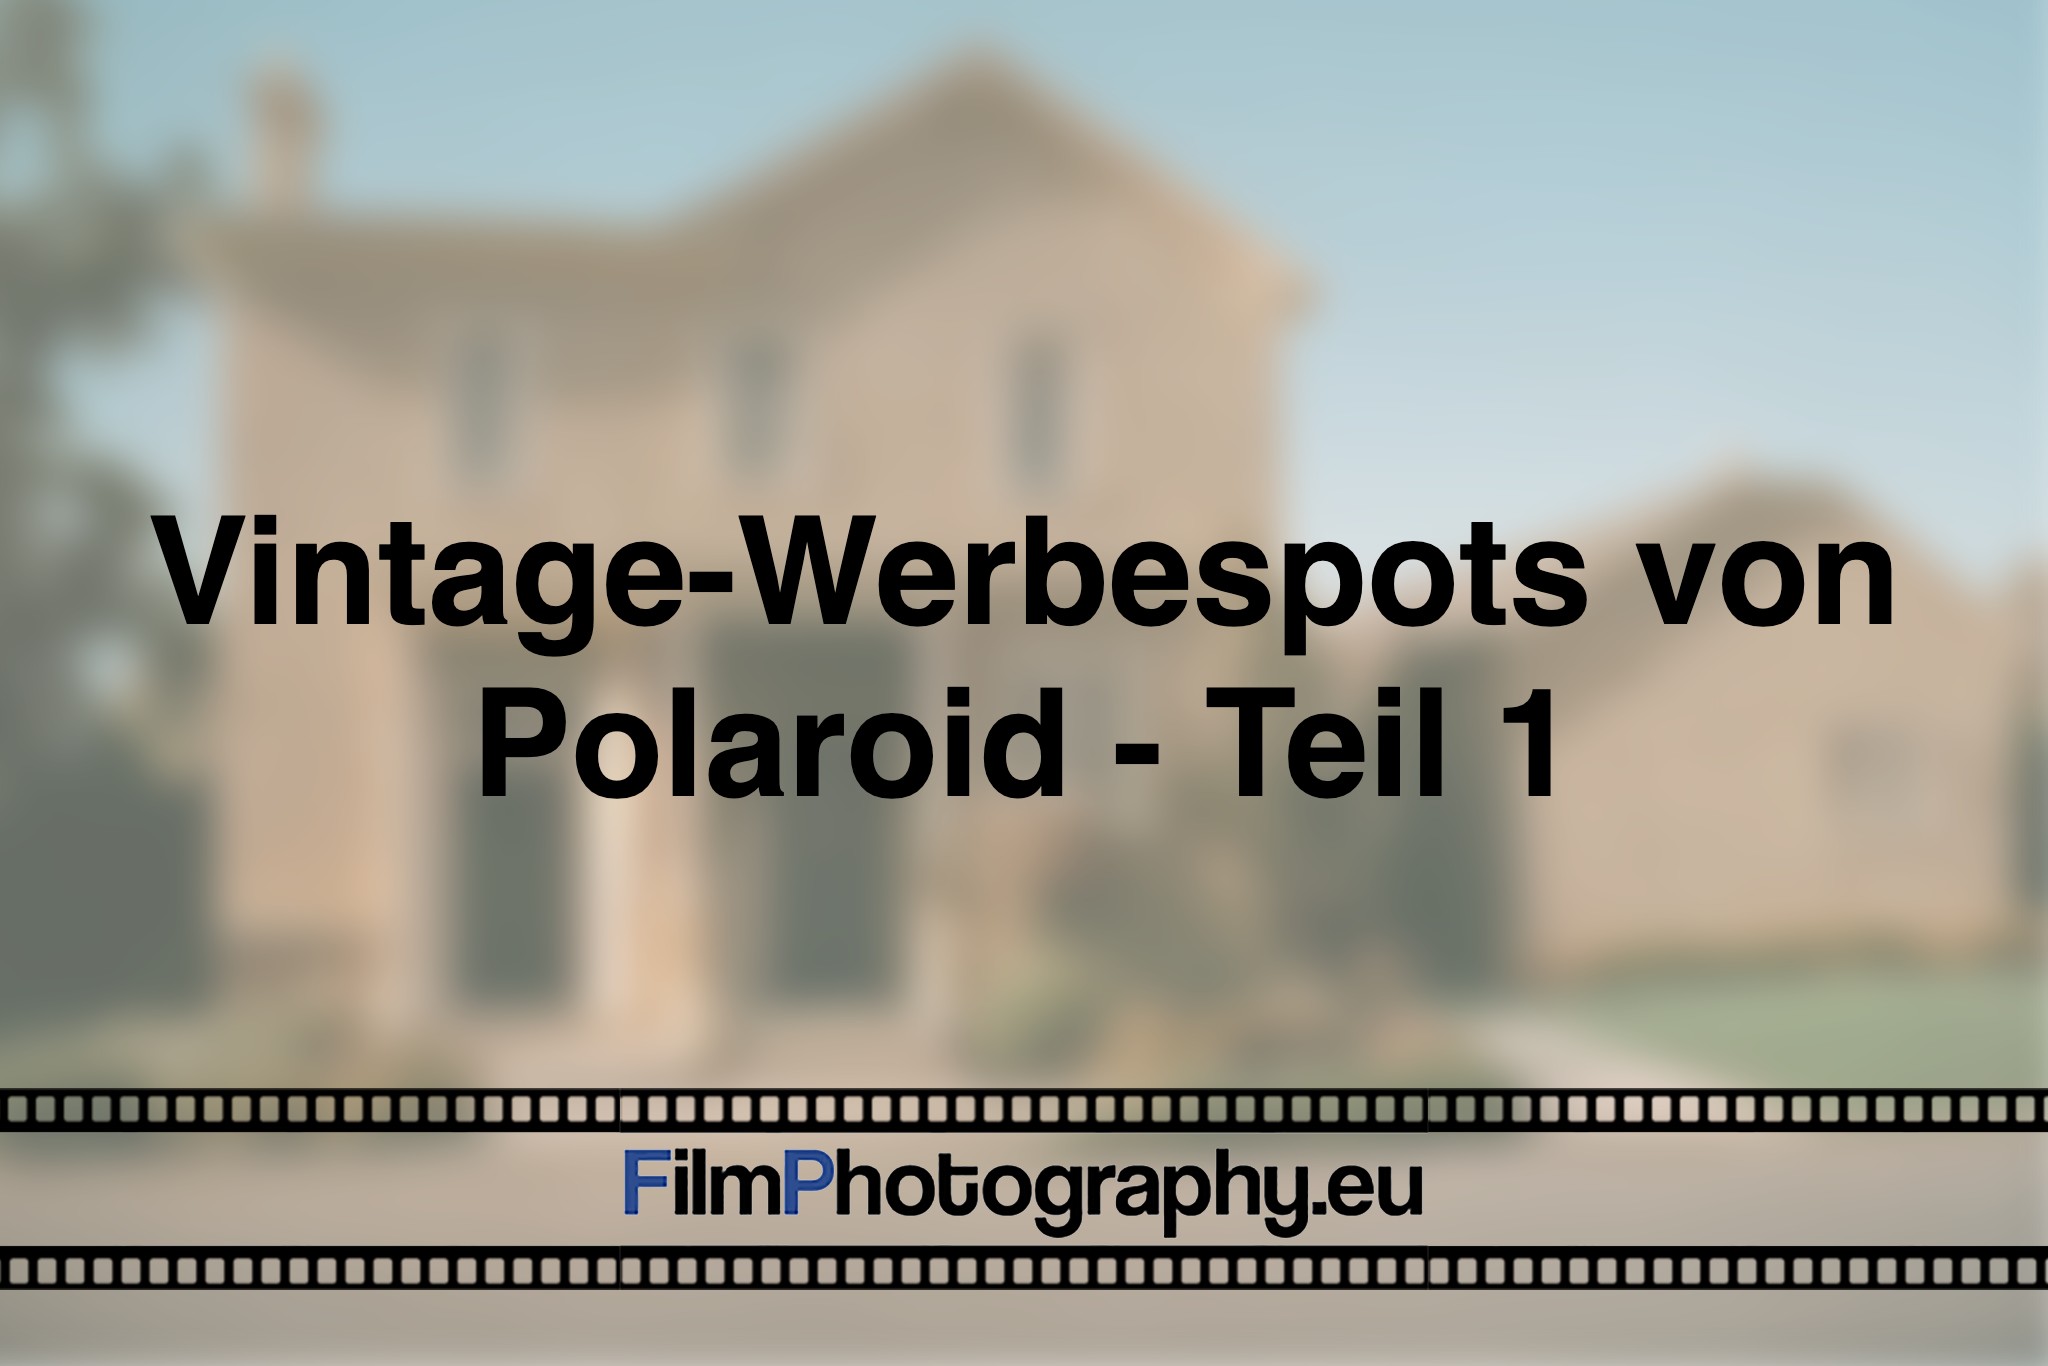 vintage-werbespots-von-polaroid-teil-1-photo-bnv